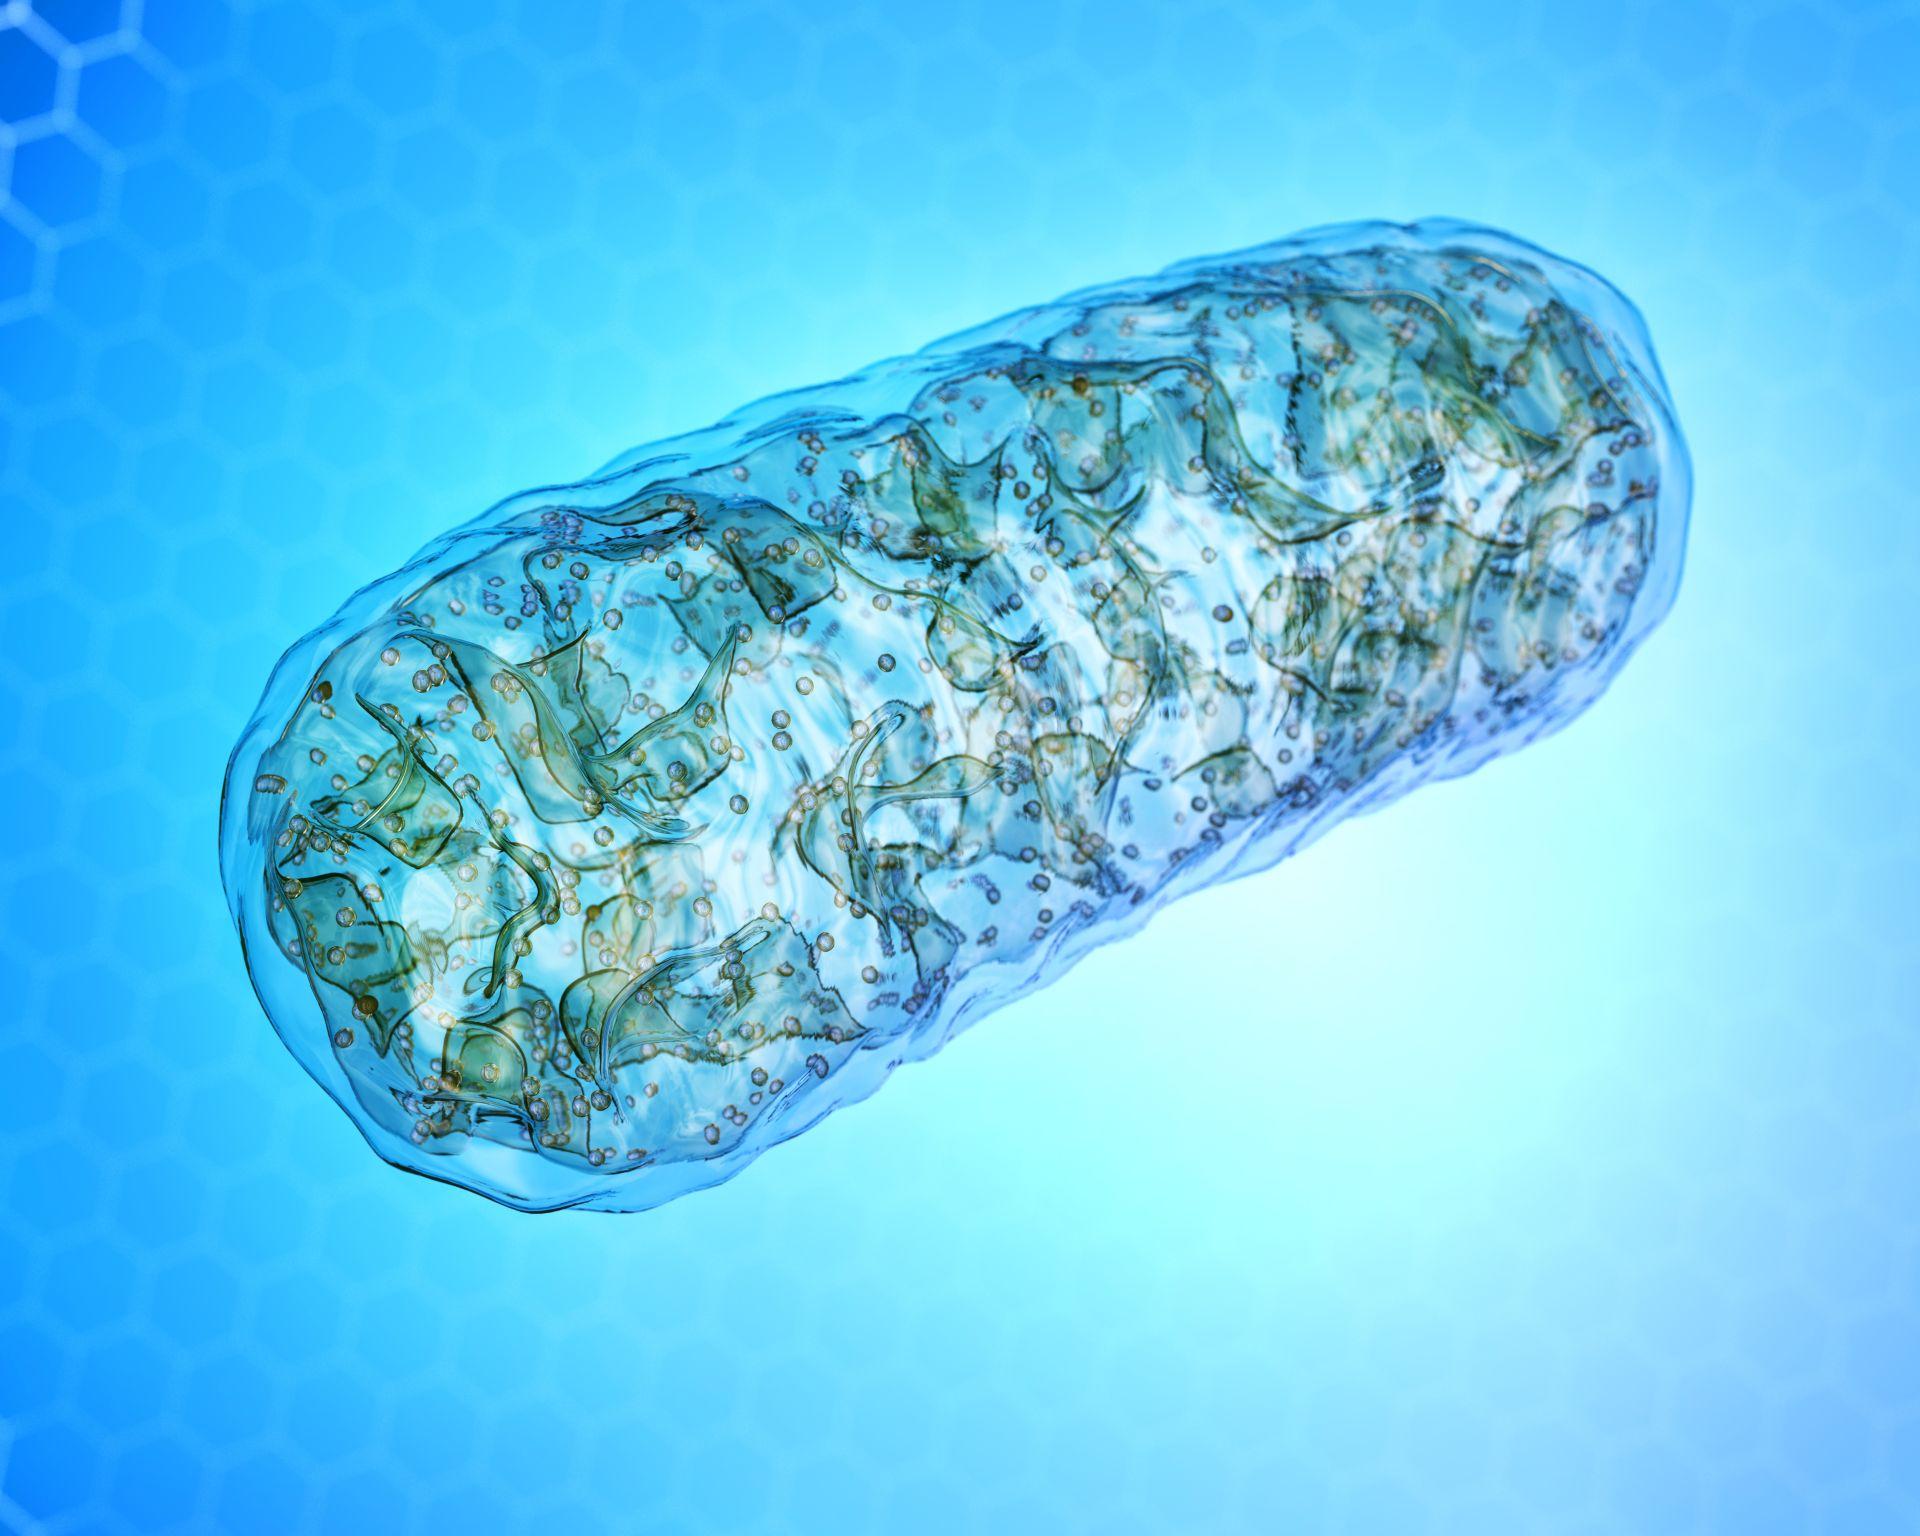 Mitochondrien - Mikrobiologie, 3D-Illustration der zellulären Organelle